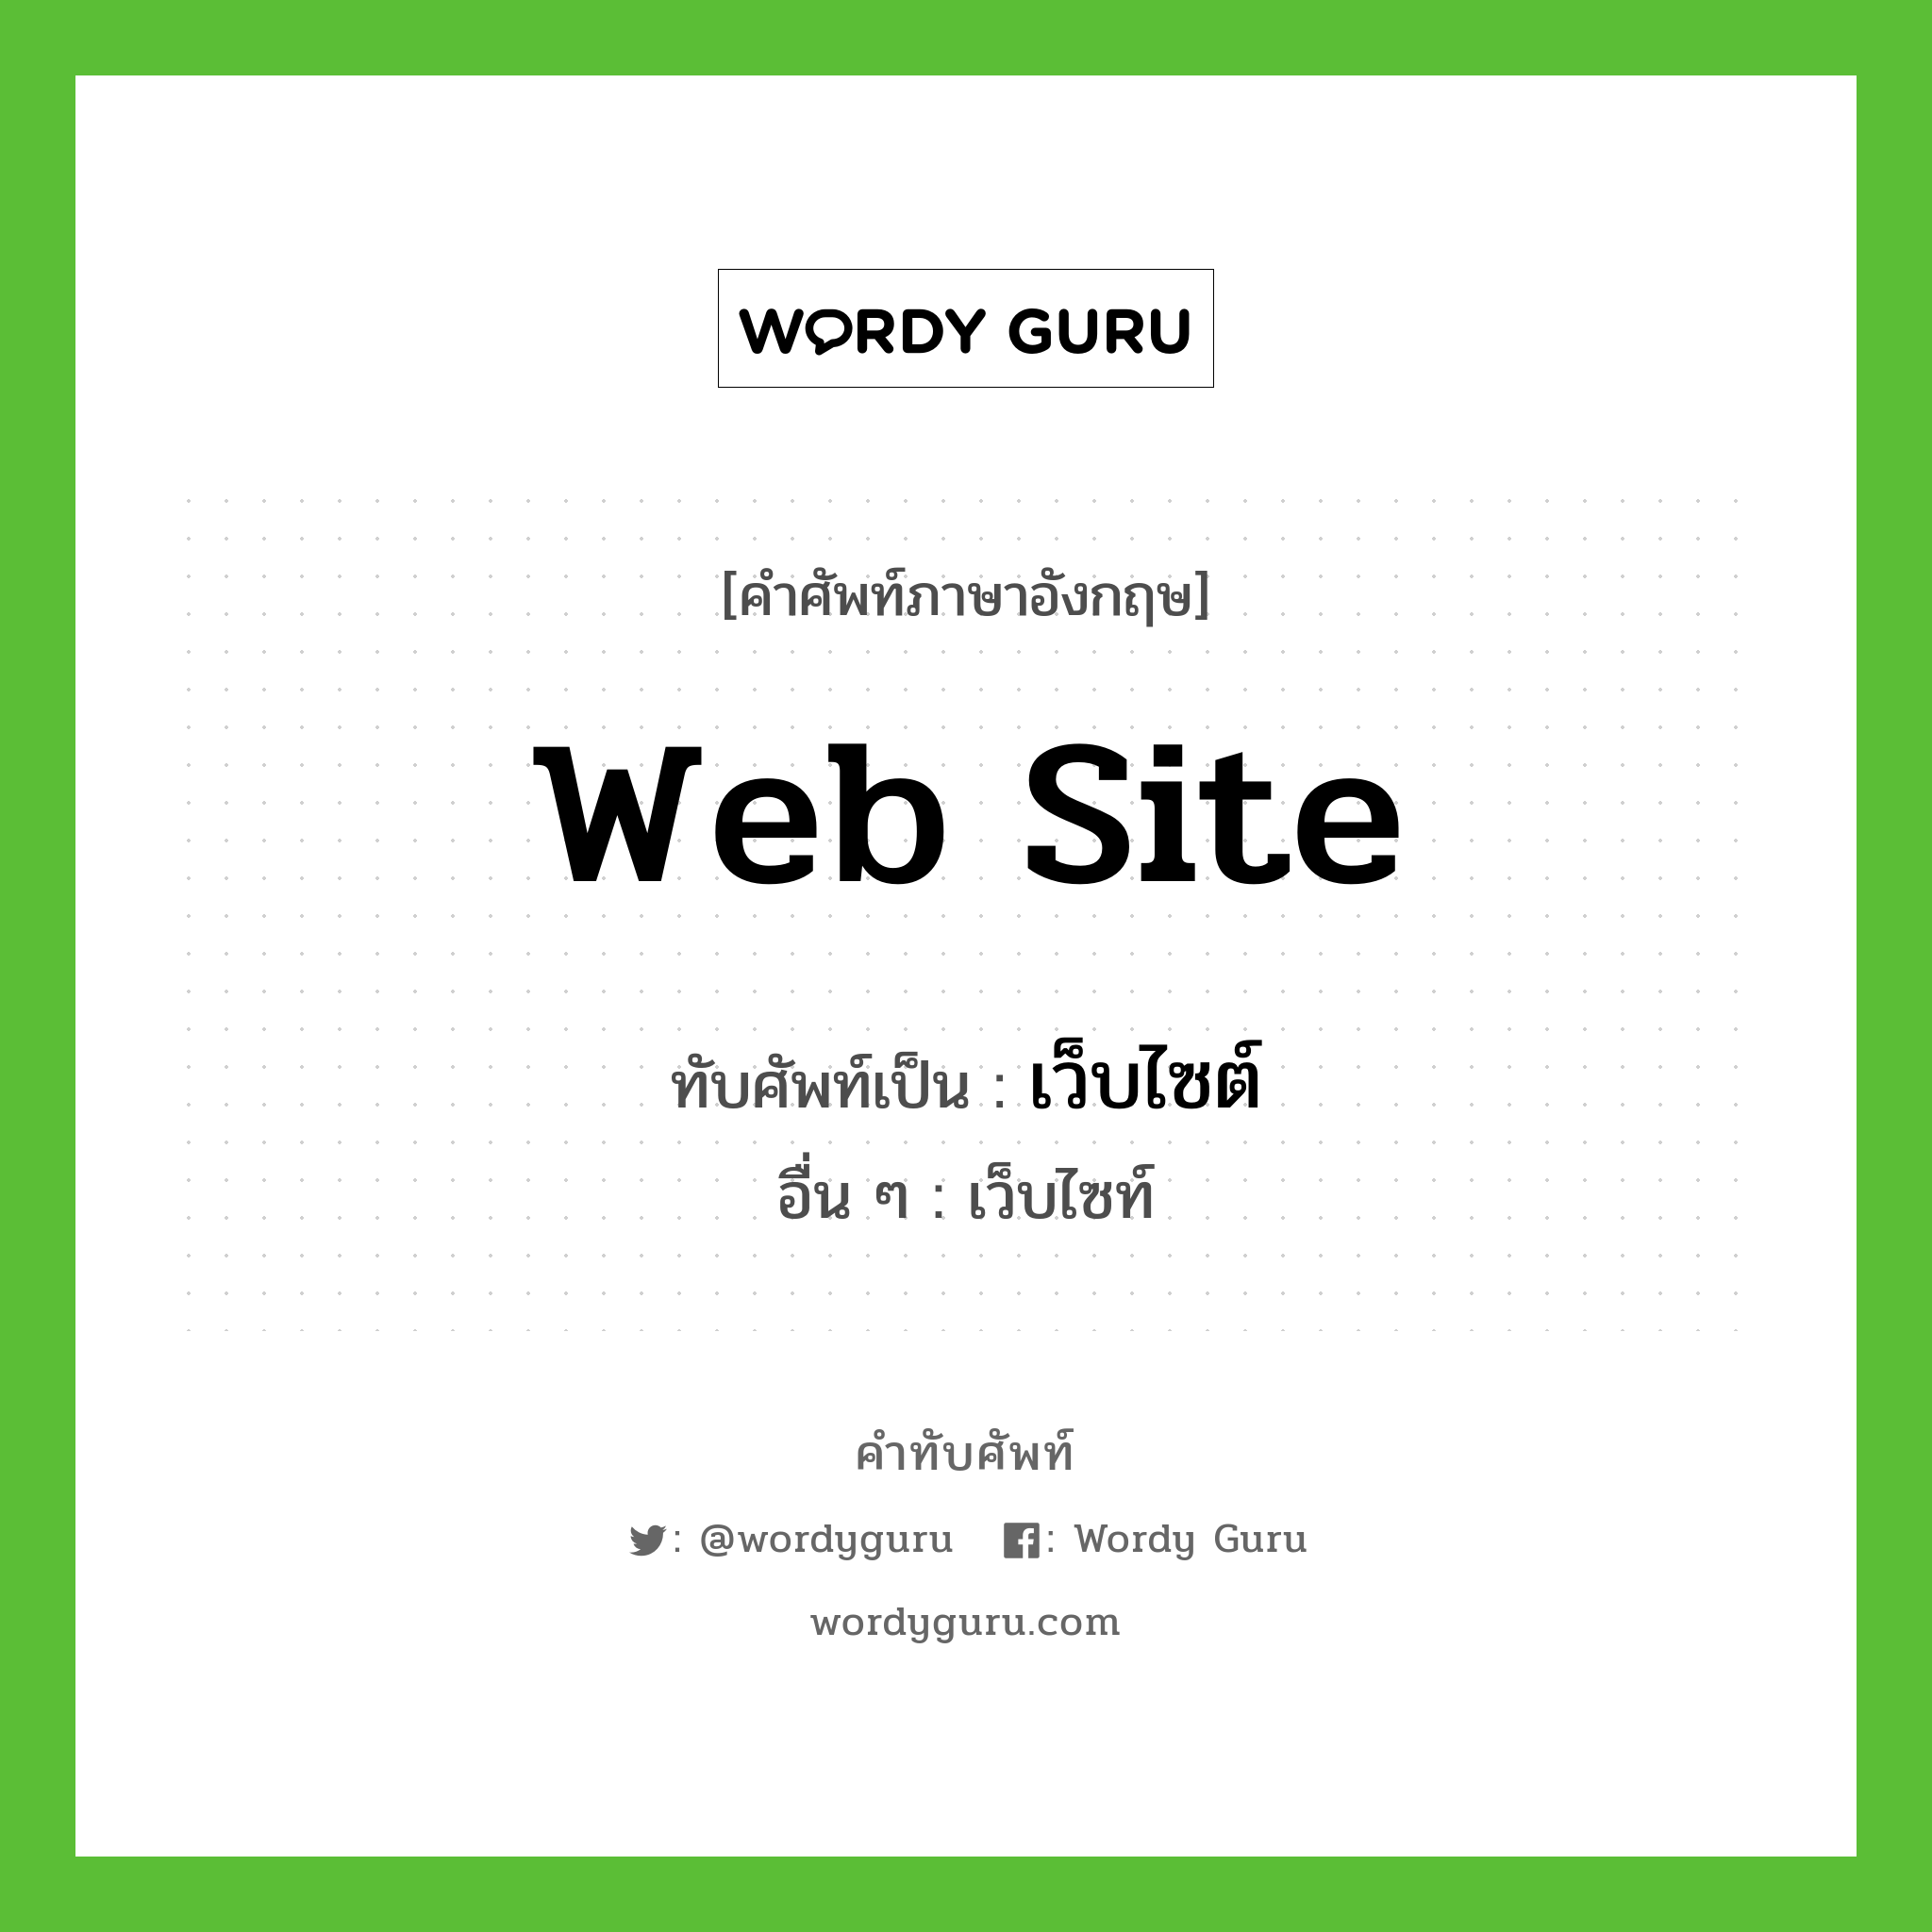 web site เขียนเป็นคำไทยว่าอะไร?, คำศัพท์ภาษาอังกฤษ web site ทับศัพท์เป็น เว็บไซต์ อื่น ๆ เว็บไซท์